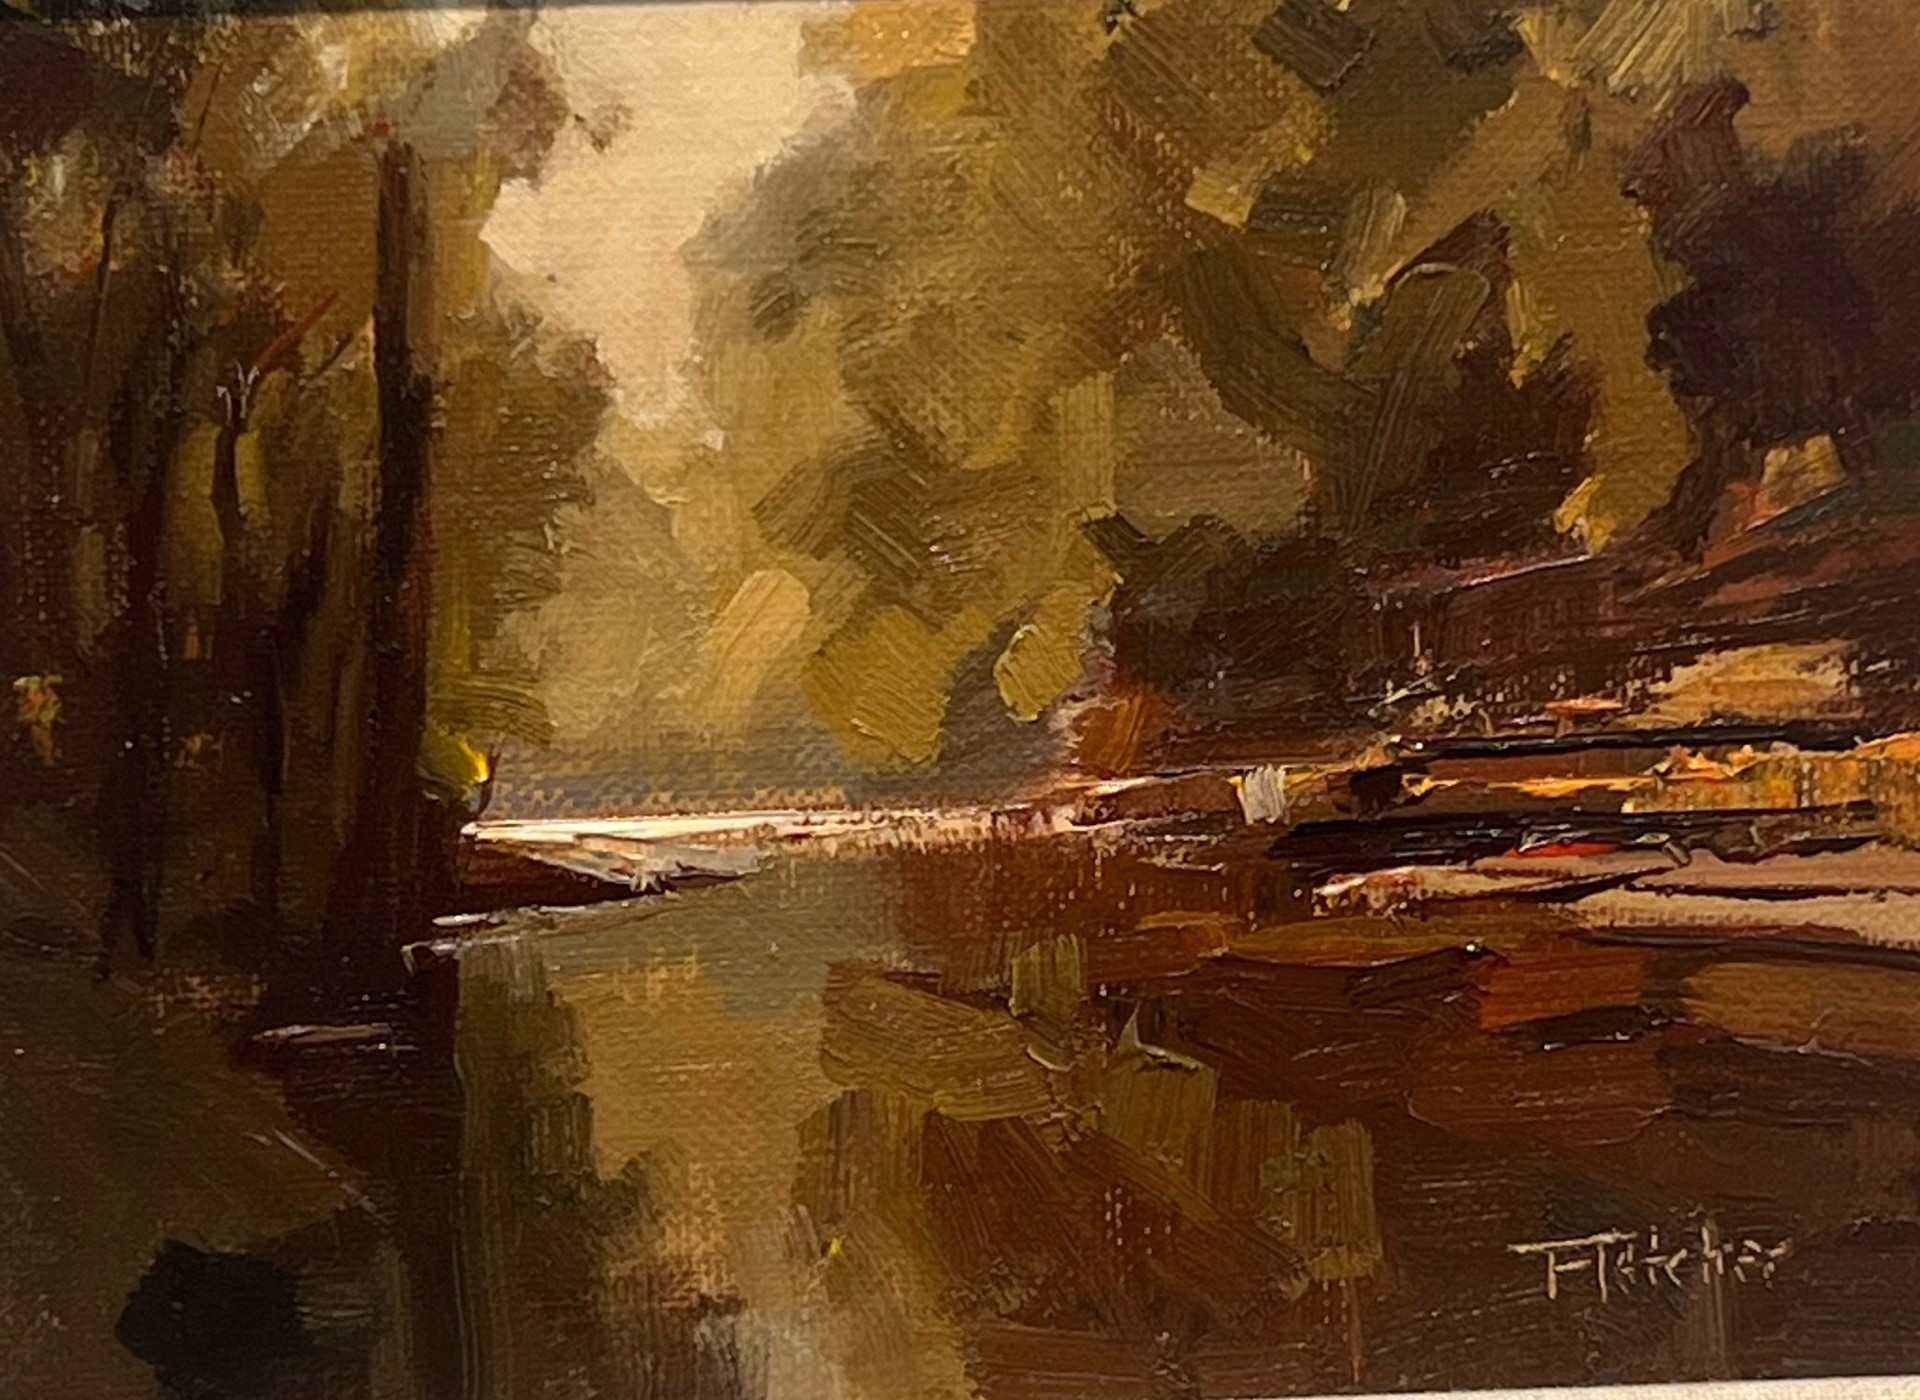 Lower Howards Creek by Bill Fletcher